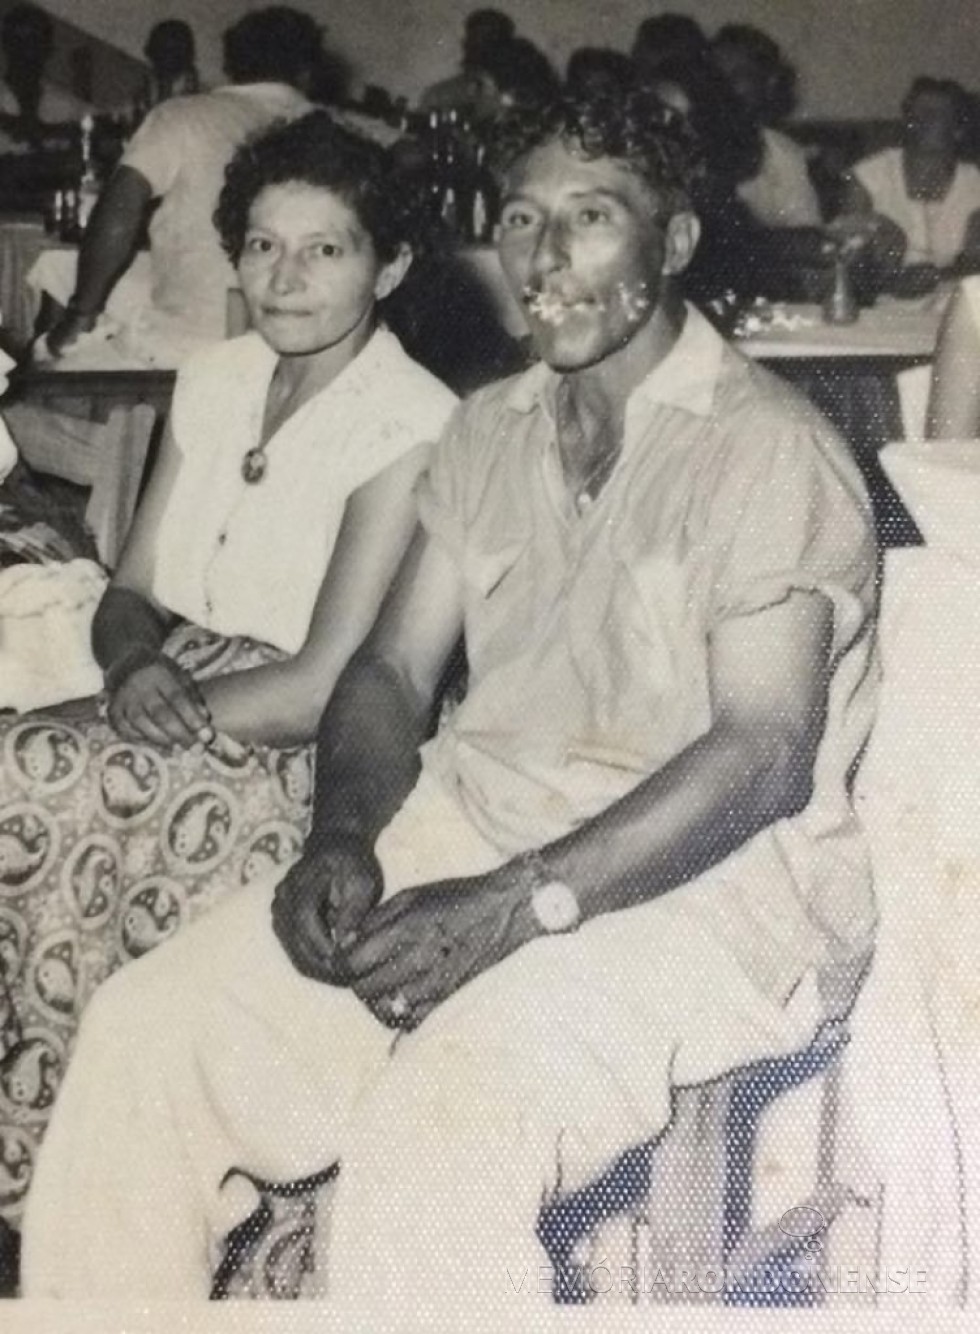 Rondonense Conceição (nascida Sobreira) Vasques com o esposo Miguel Arcanjo Vasques.
Ela faleceu em janeiro de 1982.
Imagem: Acervo Isa Schneider - FOTO 5 - 